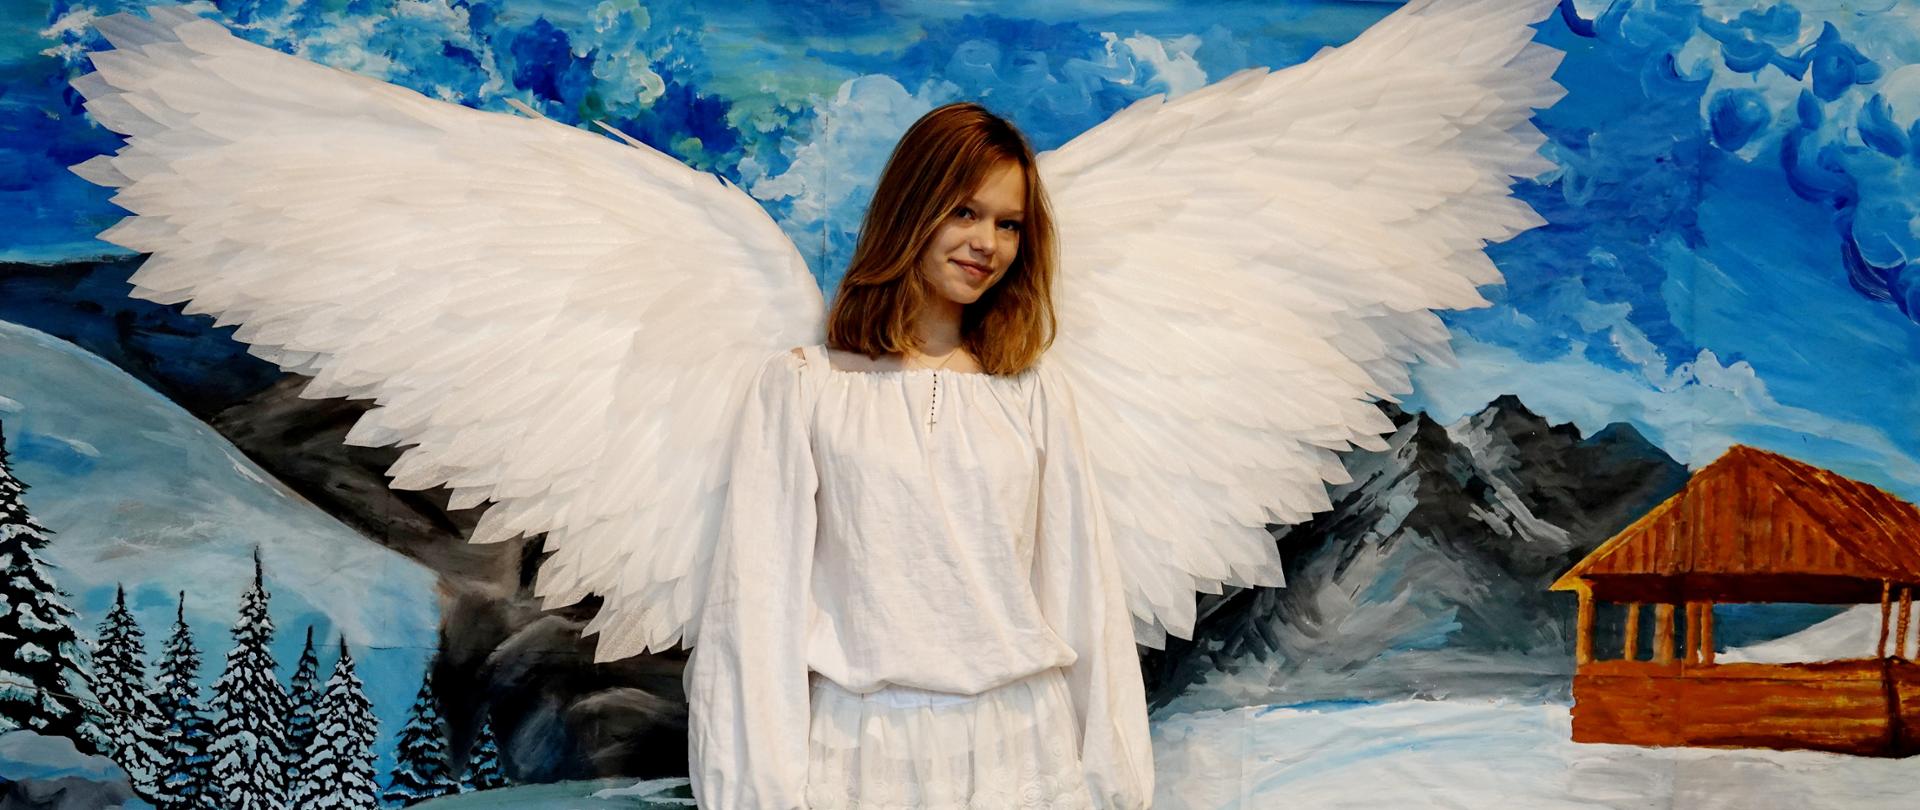 Na zdjęciu uczennica kl. 1A Natalia Putaj. Natalia brała udział w szkolnych Jasełkach. Występuje jako anioł. Dziewczyna ubrana jest w białą bluzkę i białą spódnice. Ma rozpuszczone włosy blond. Dziewczyna ma założone duże białe skrzydła. W tle znajduje się duży obraz na którym namalowany jest pejzaż górski z choinkami, szczytami gór i błękitnym niebem. 